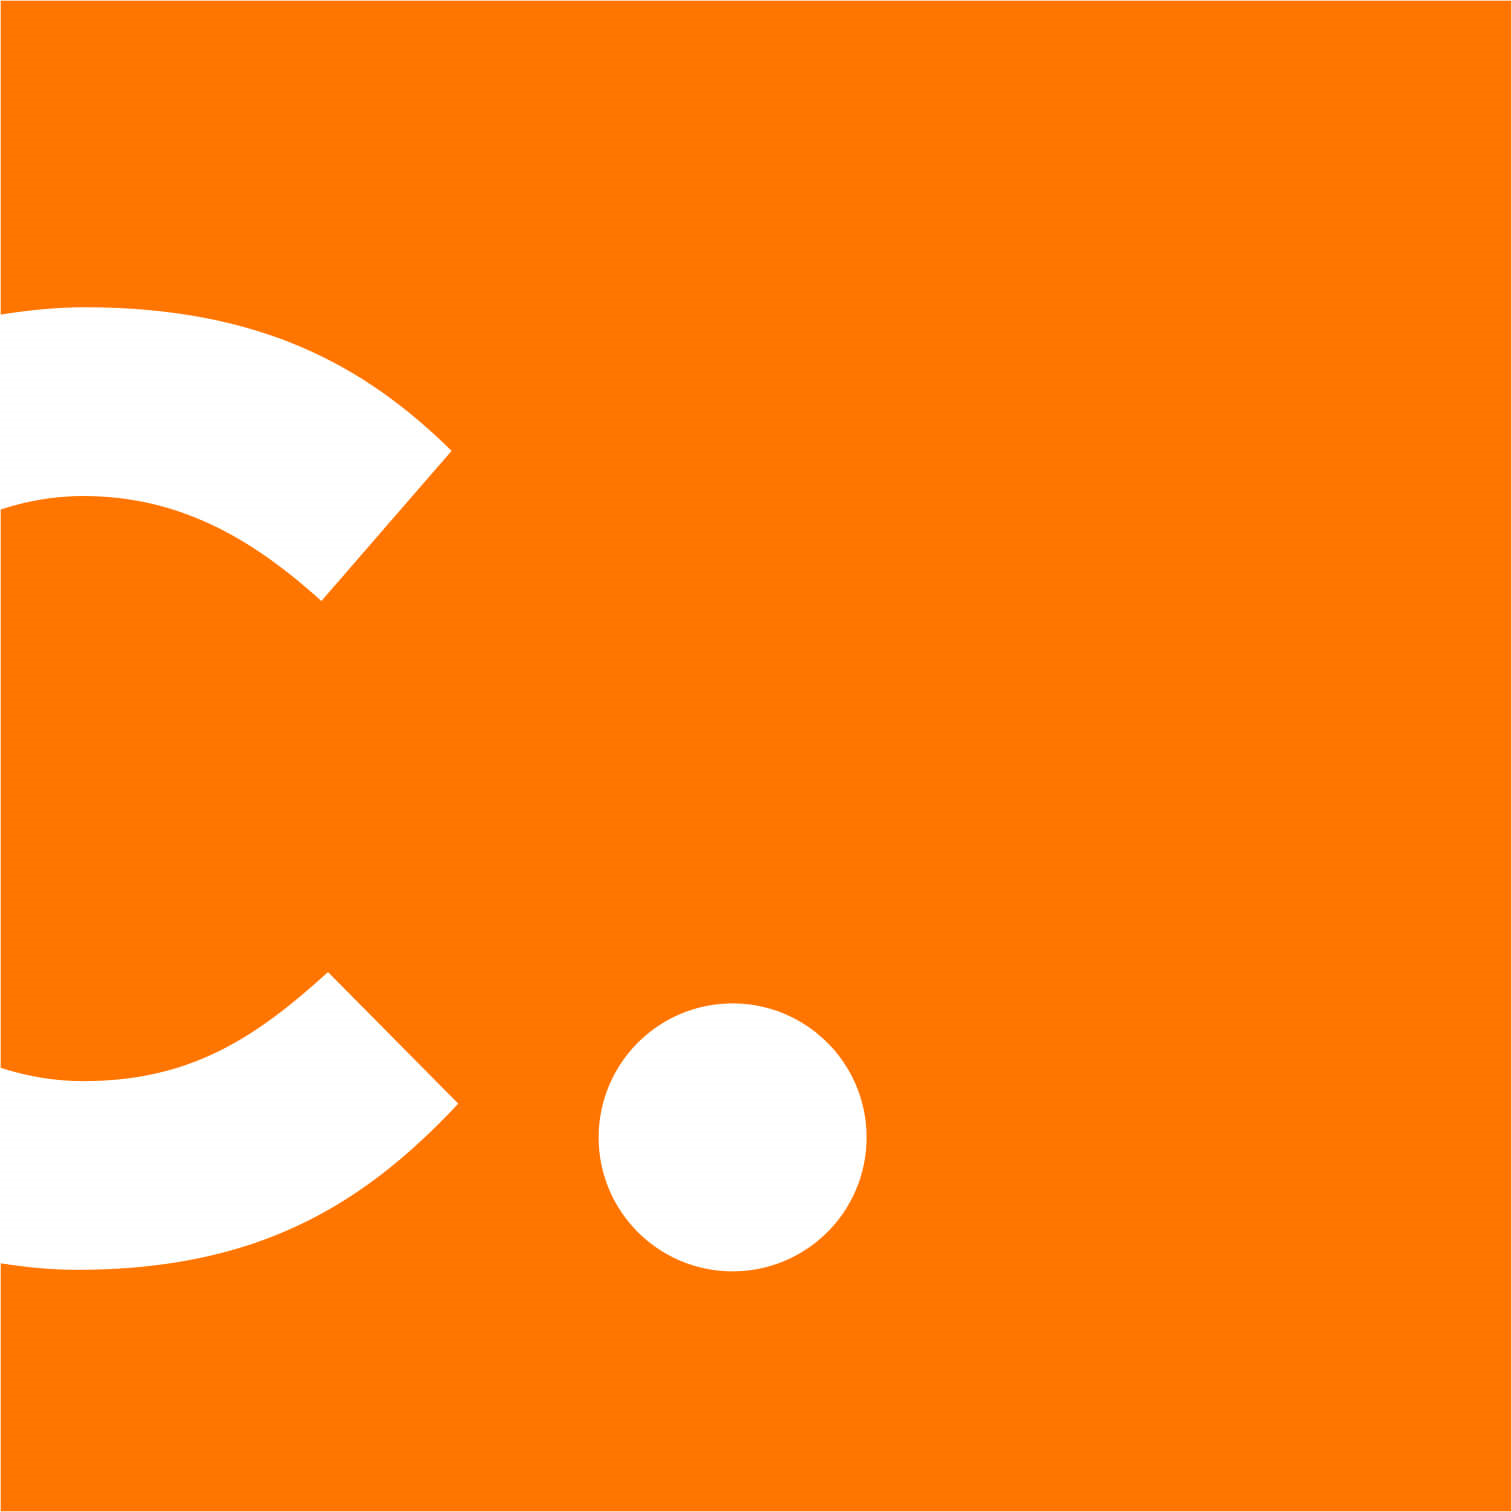 Concept Services Company Logo